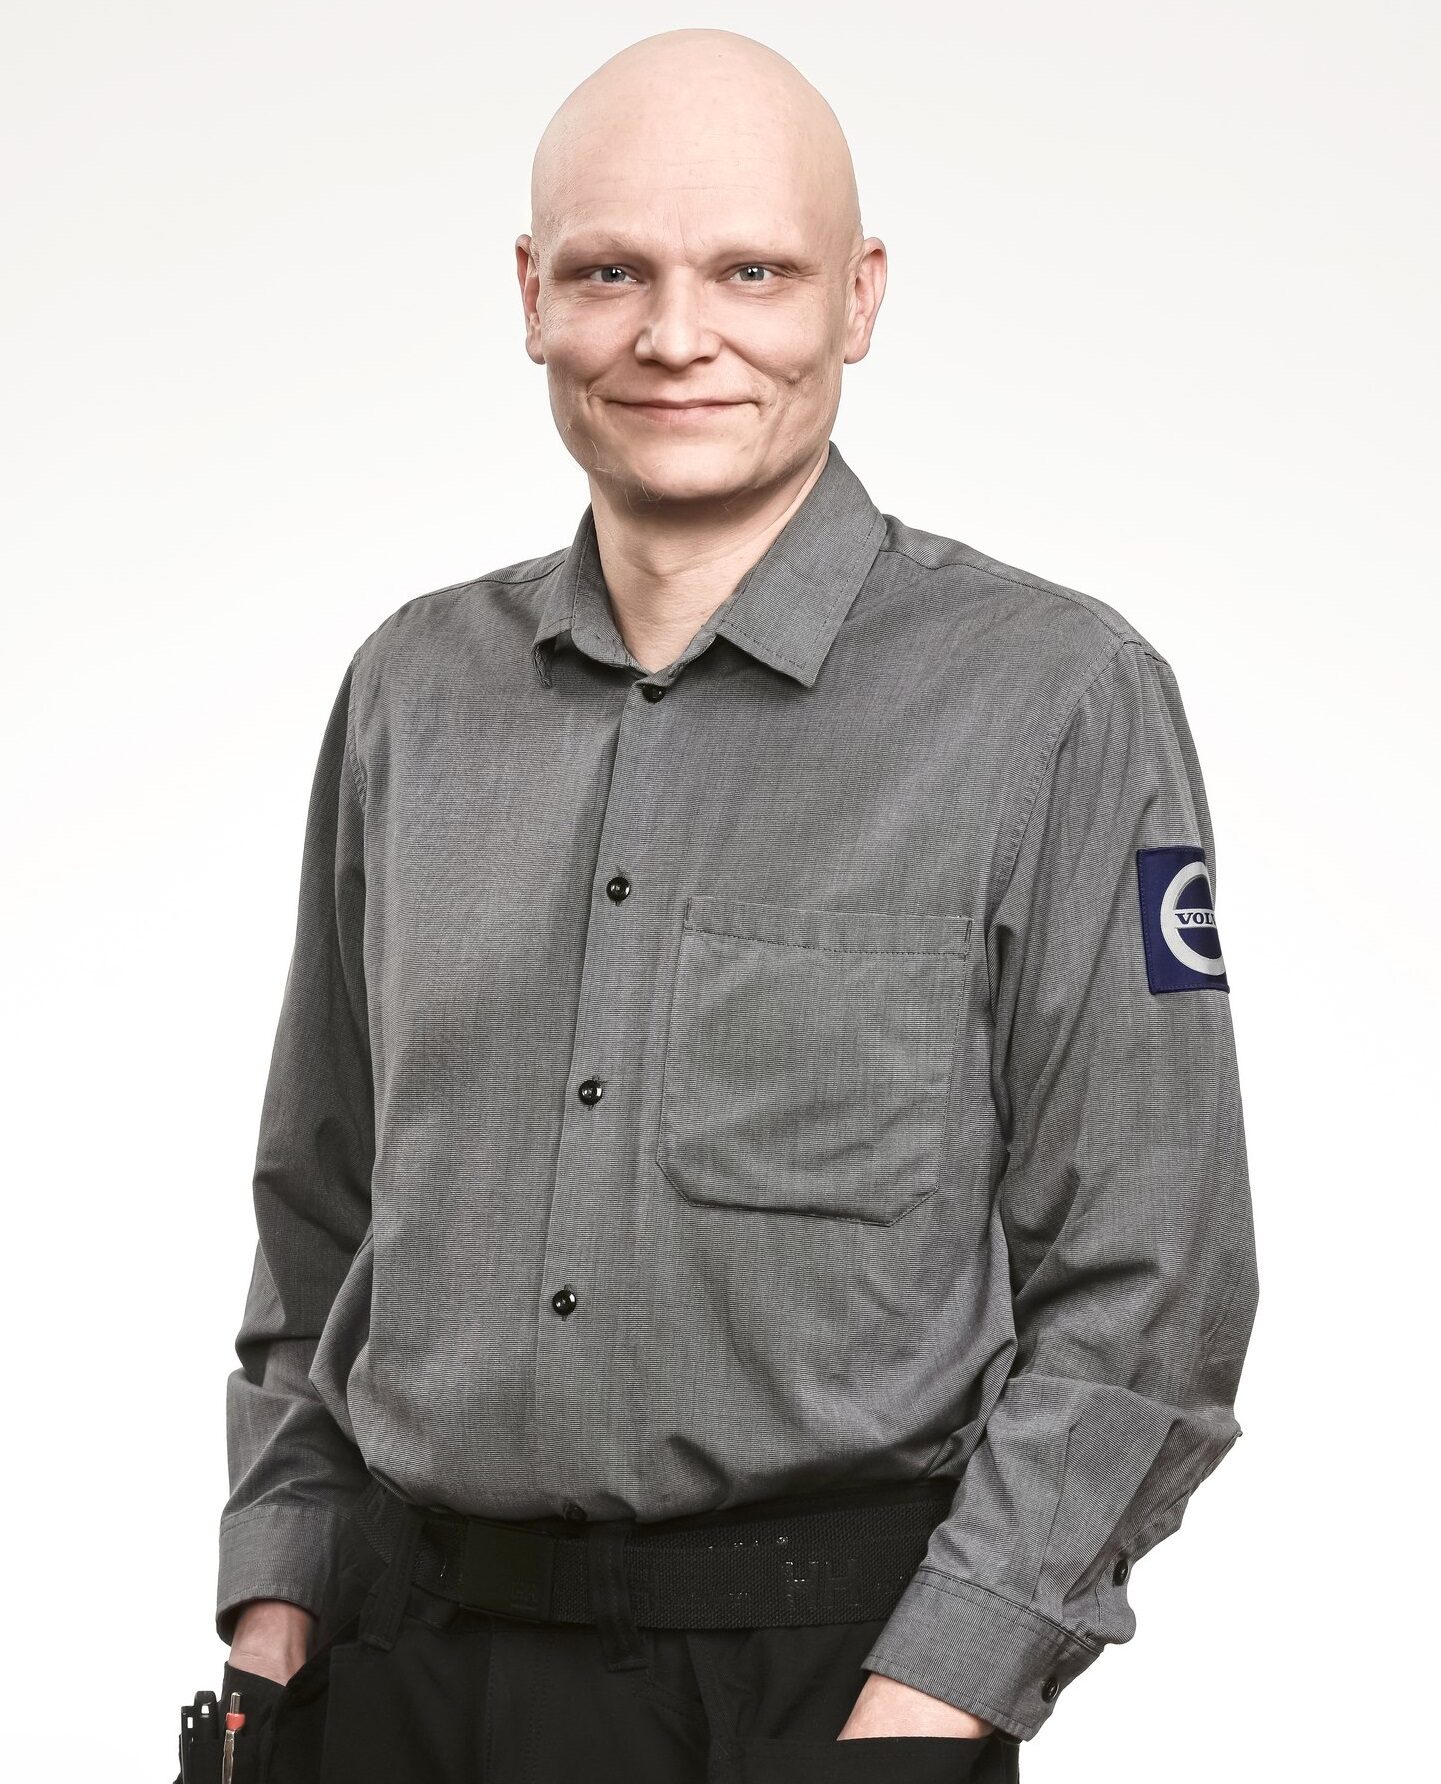 Jakke Ukkonen, työnjohtaja